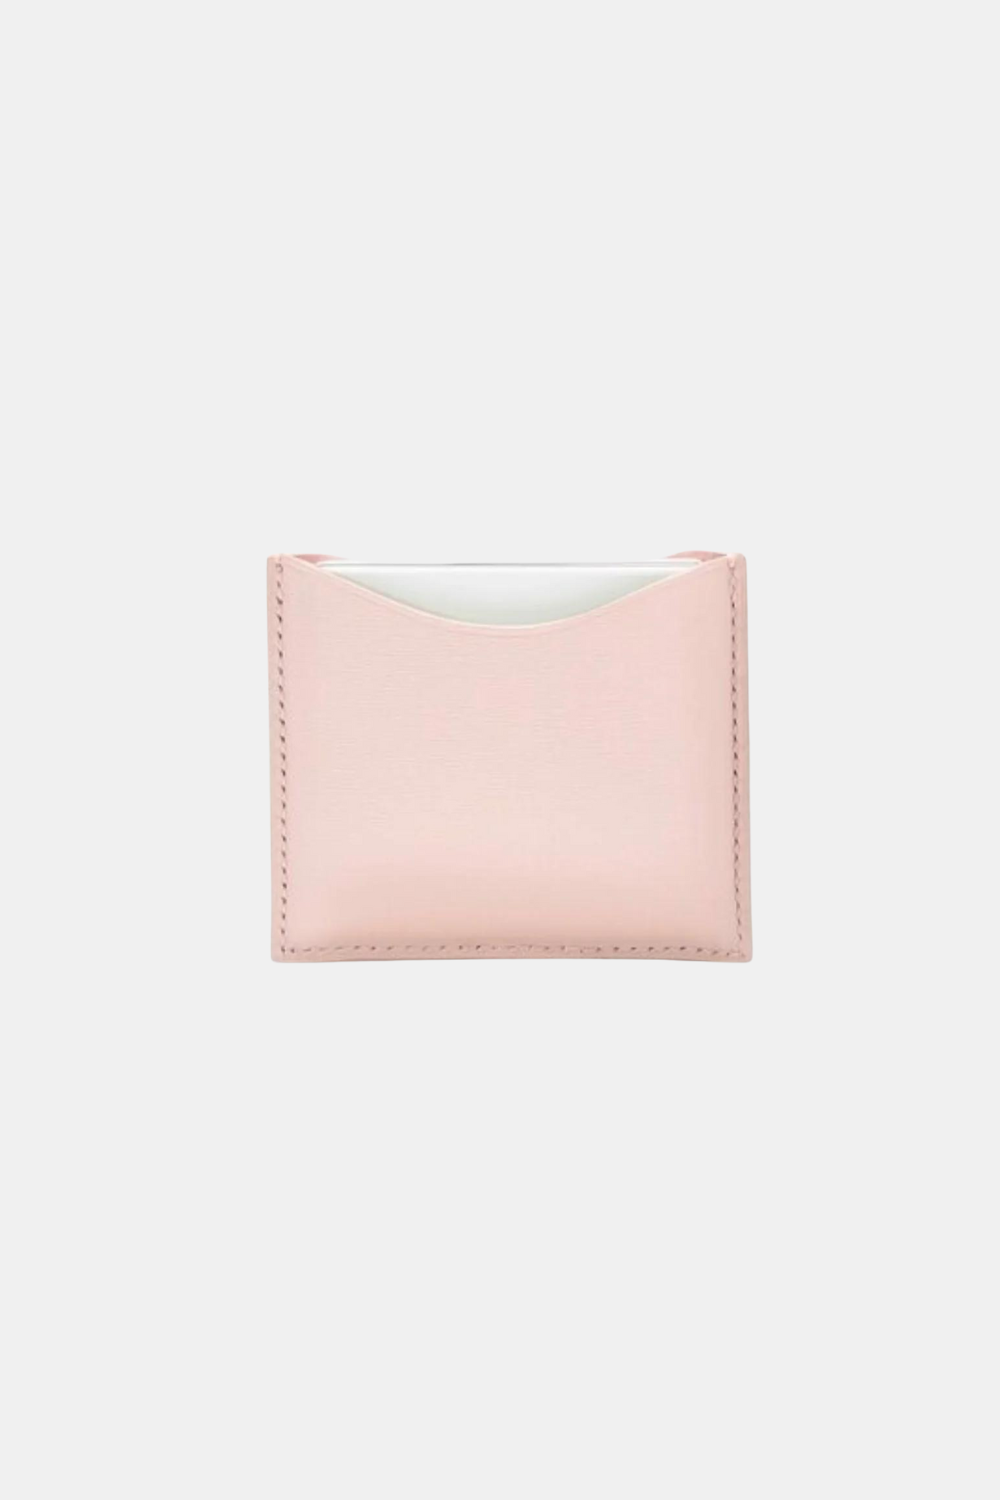 La Bouche Rouge Refillable Pink Fine Leather Compact Case